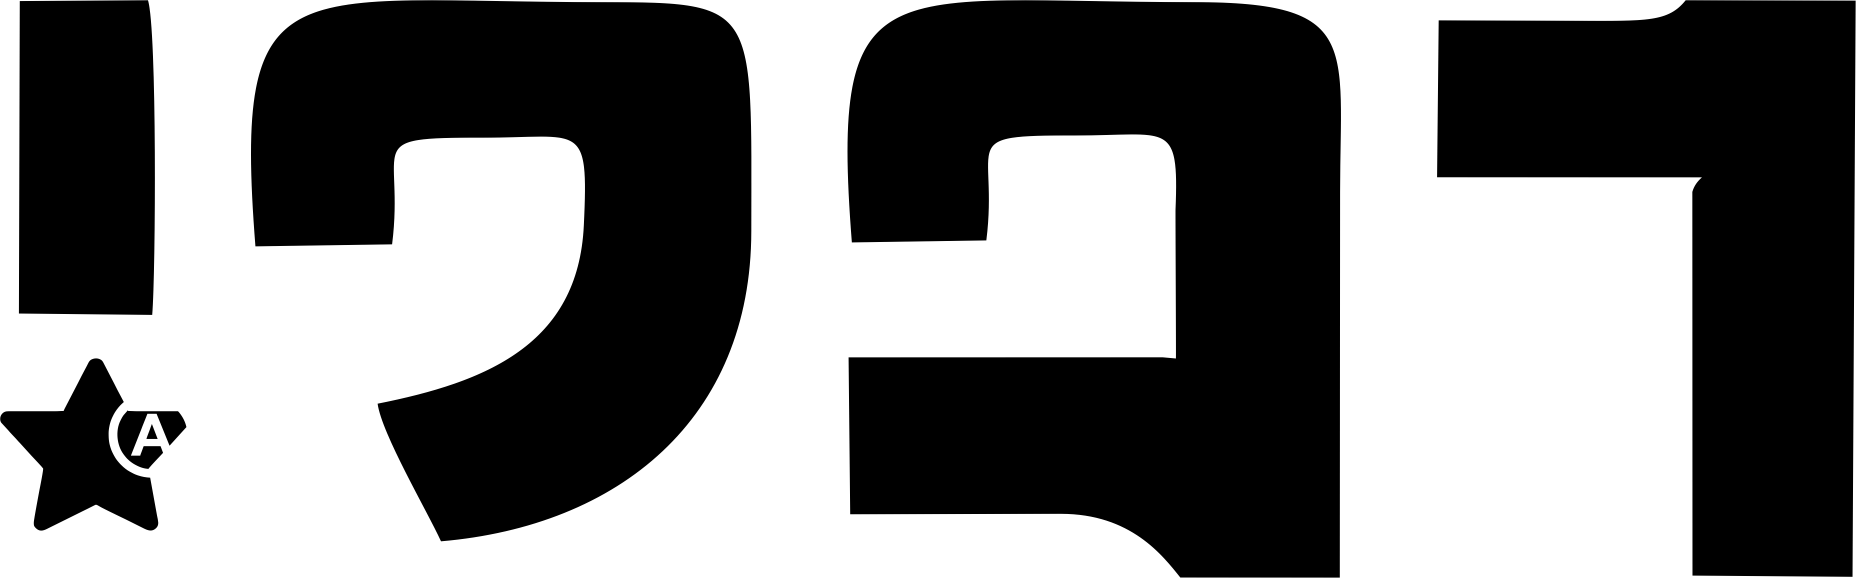 the dabar logo designed by dibri nsofor